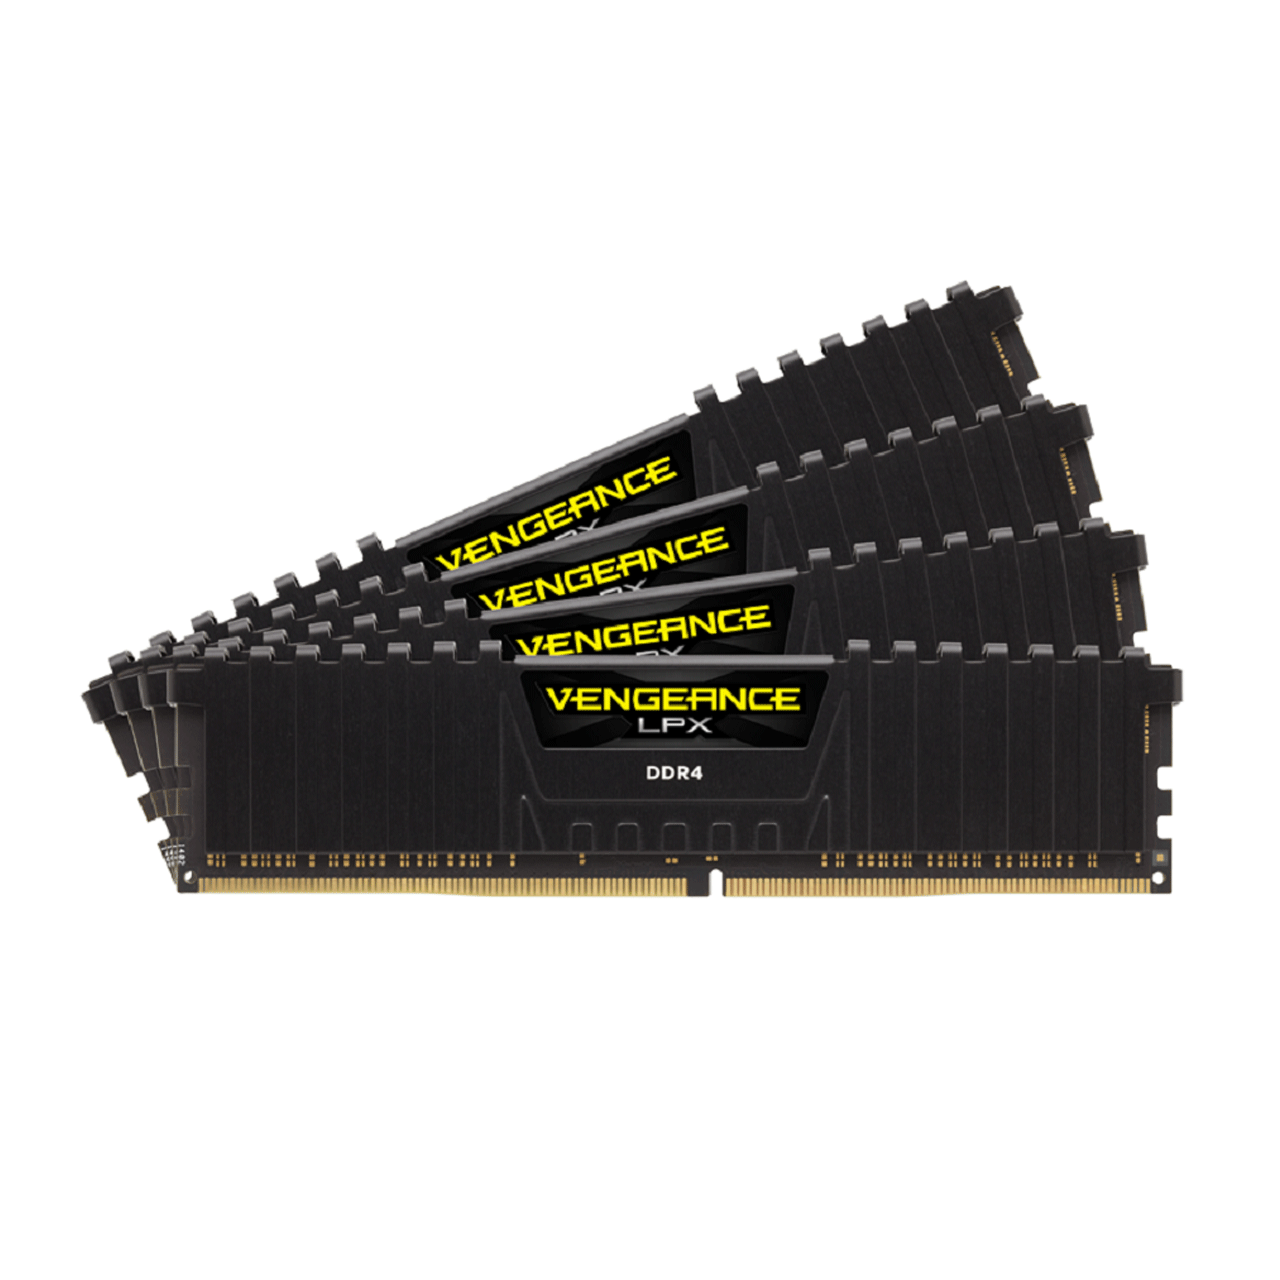 Corsair-Vengeance-LPX-DDR4--32GB-3200MHz-CL16-Dual-Channel-Ram